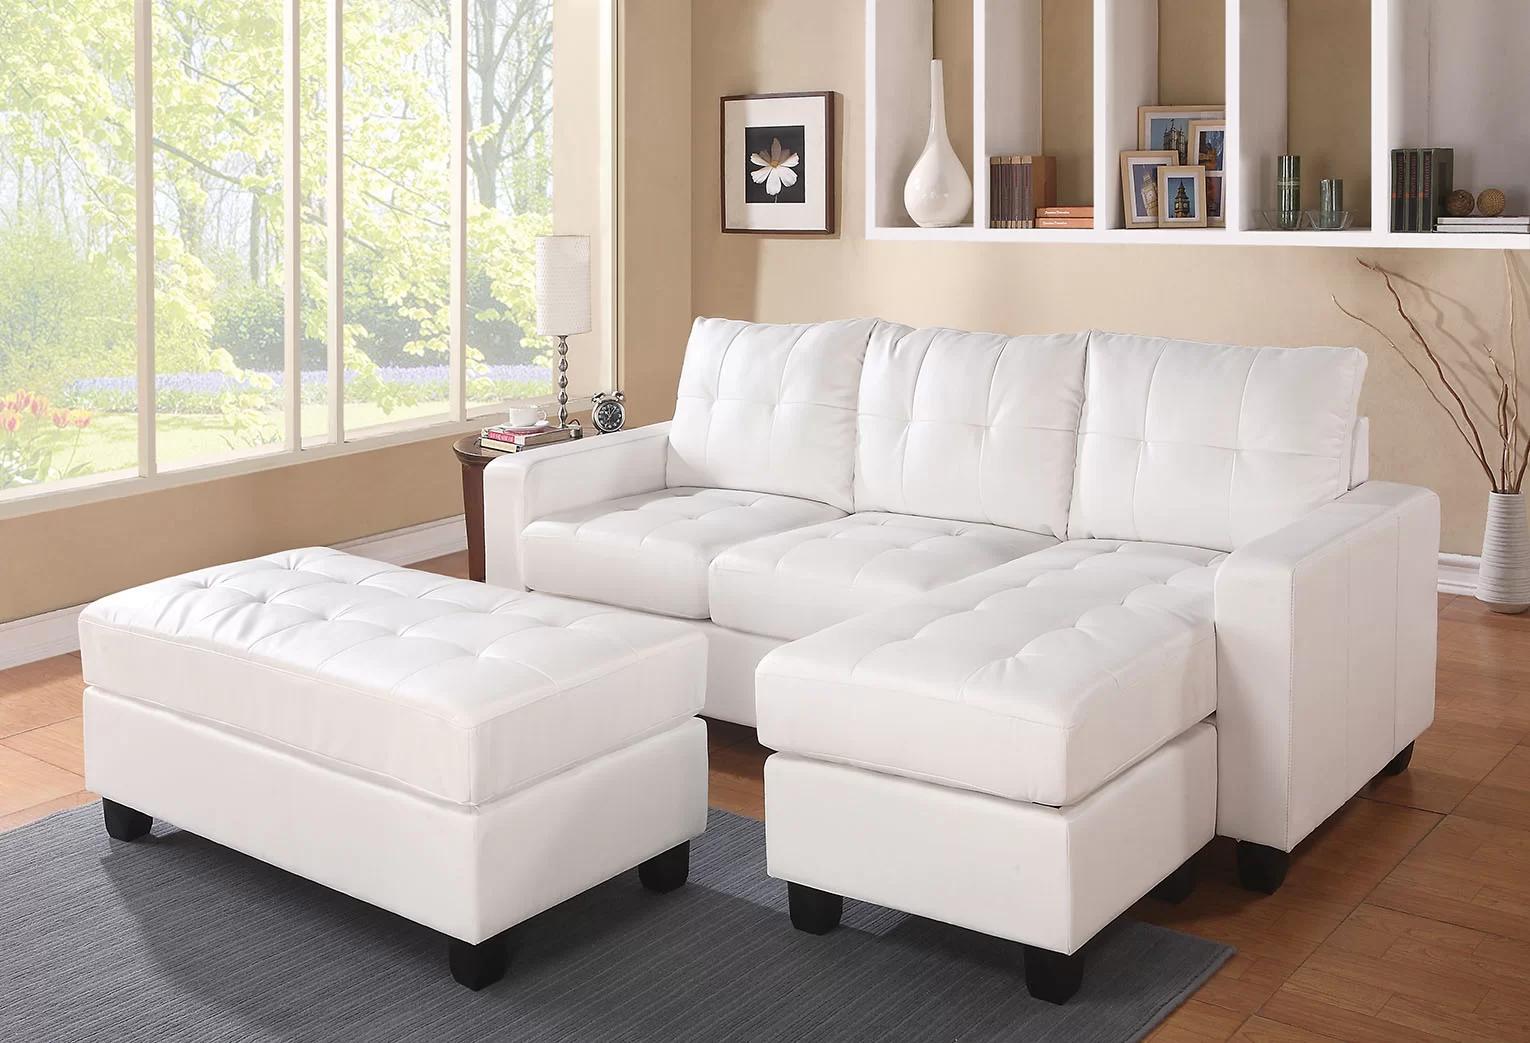 

    
Acme Furniture Lyssa Sectional w/ Ottoman White 51210-3pcs
